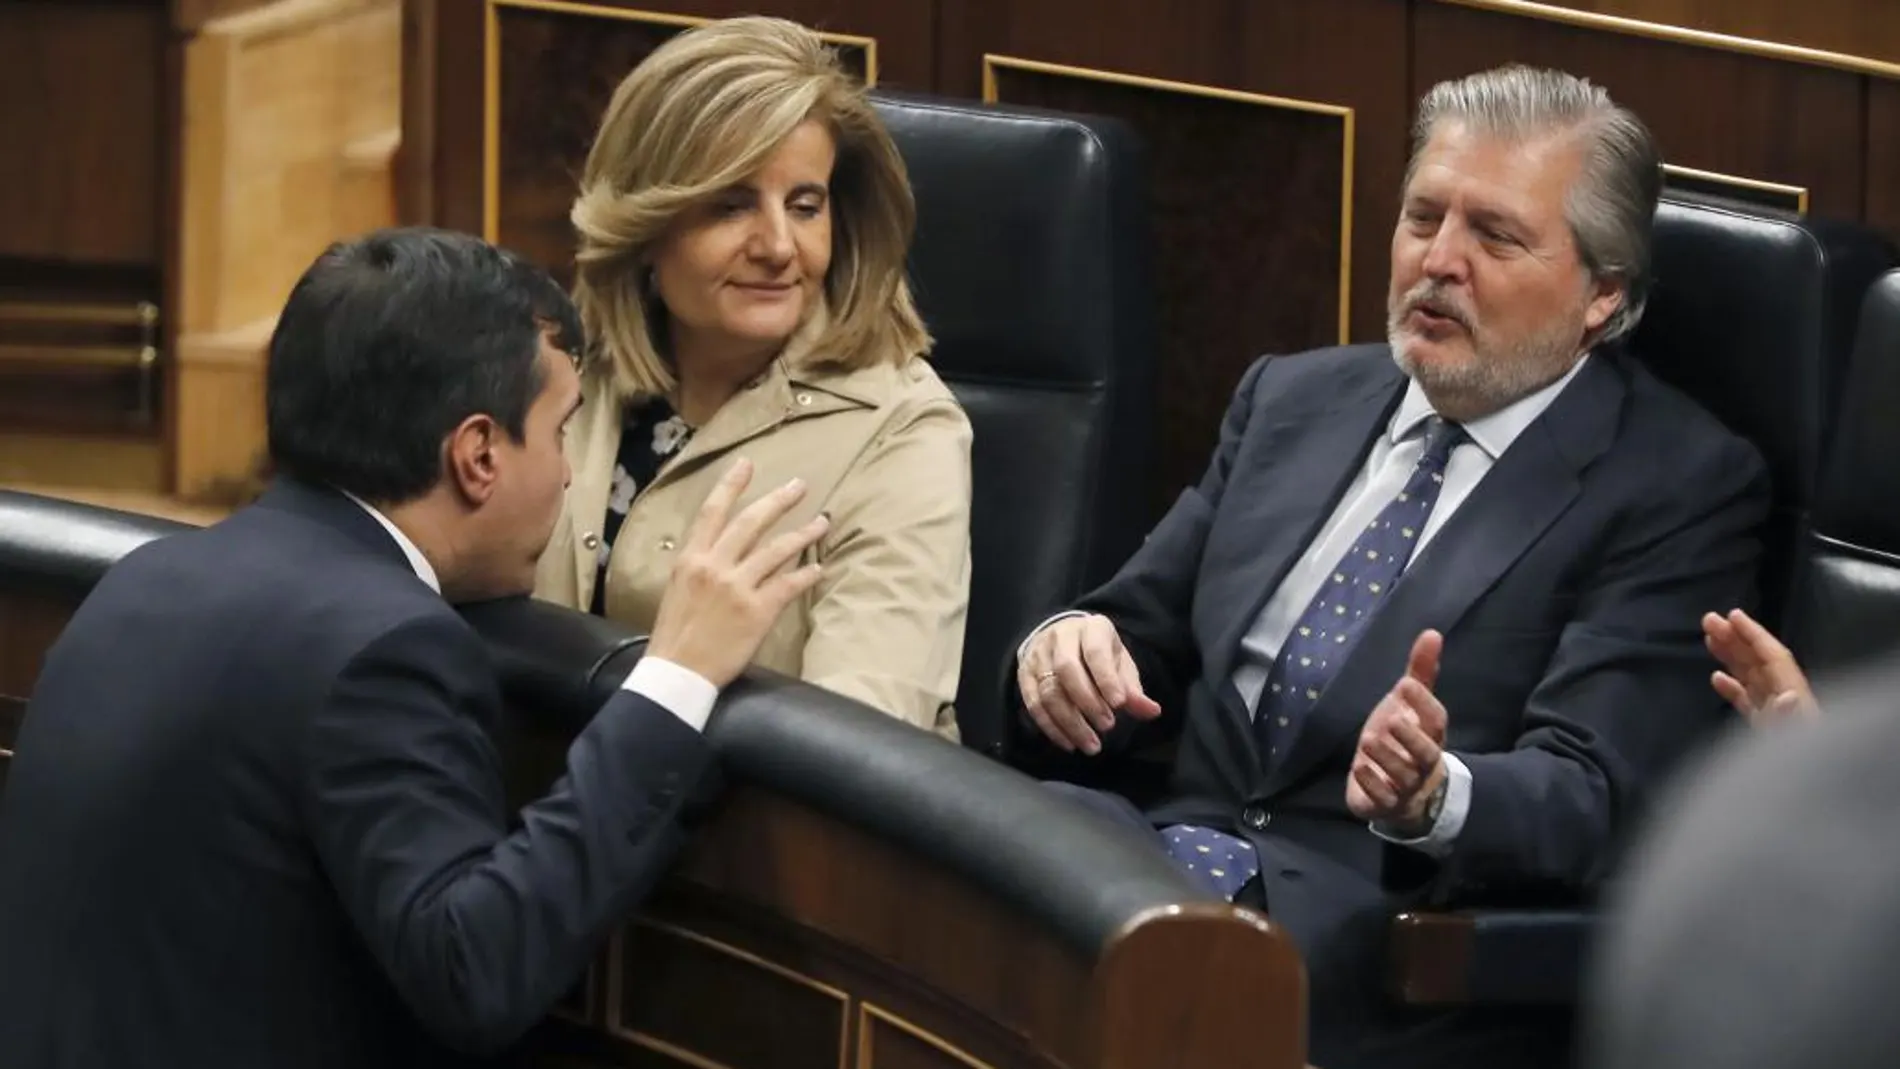 La ministra de Empleo, Fátima Báñez (c), y el de Educación, Íñigo Méndez de Vigo (d), conversan con el diputado del PP, José Luis Ayllón (i), esta tarde en el pleno del Congreso de los Diputados